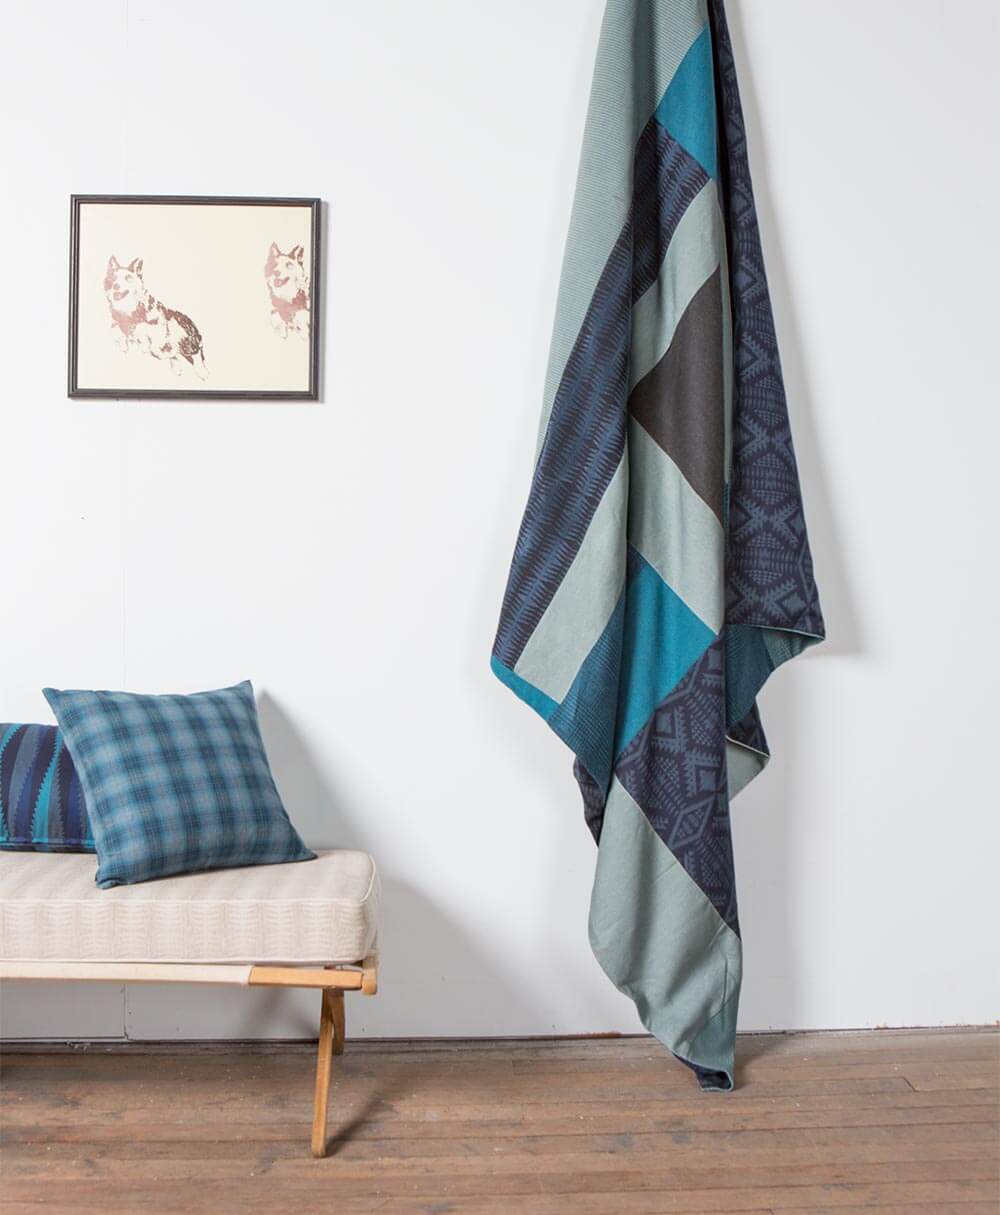 Ein Quilt aus verschiedenen Stücken der Pendleton by Sunbrella-Polsterstoffe hängt neben blau gemusterten Kissen von der Decke.